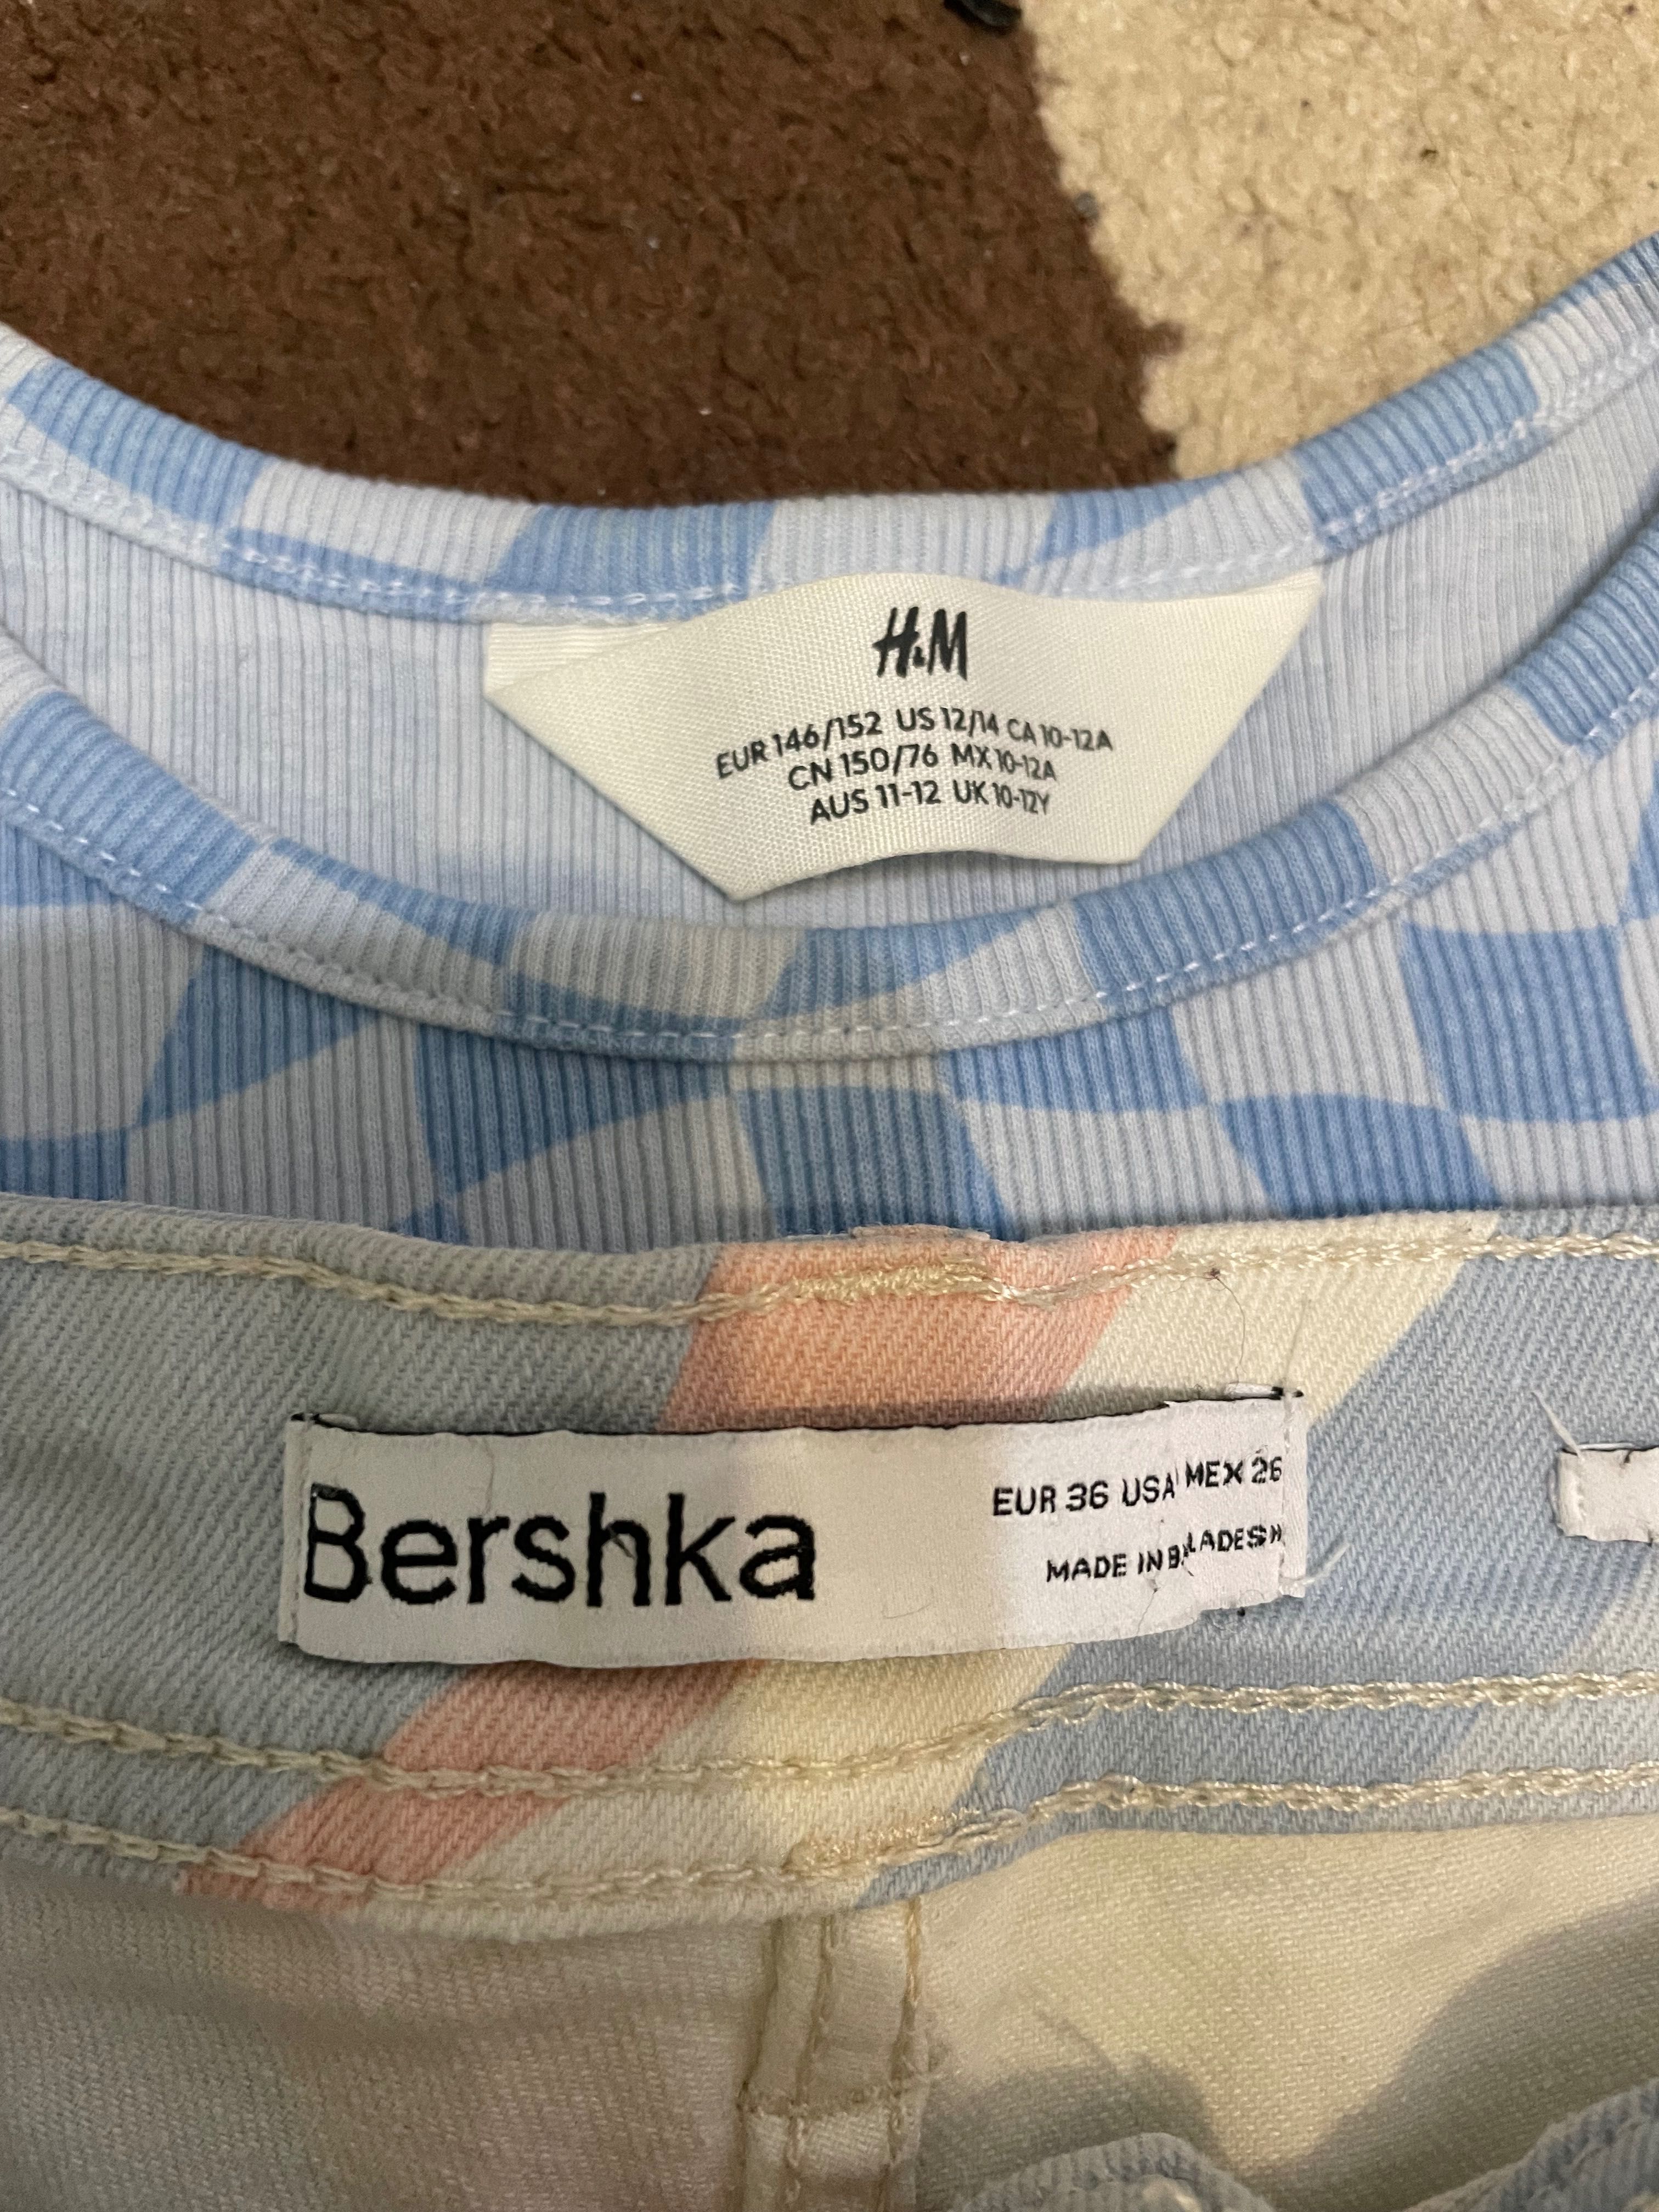 Блузка на H&M и панталонки на Bershka